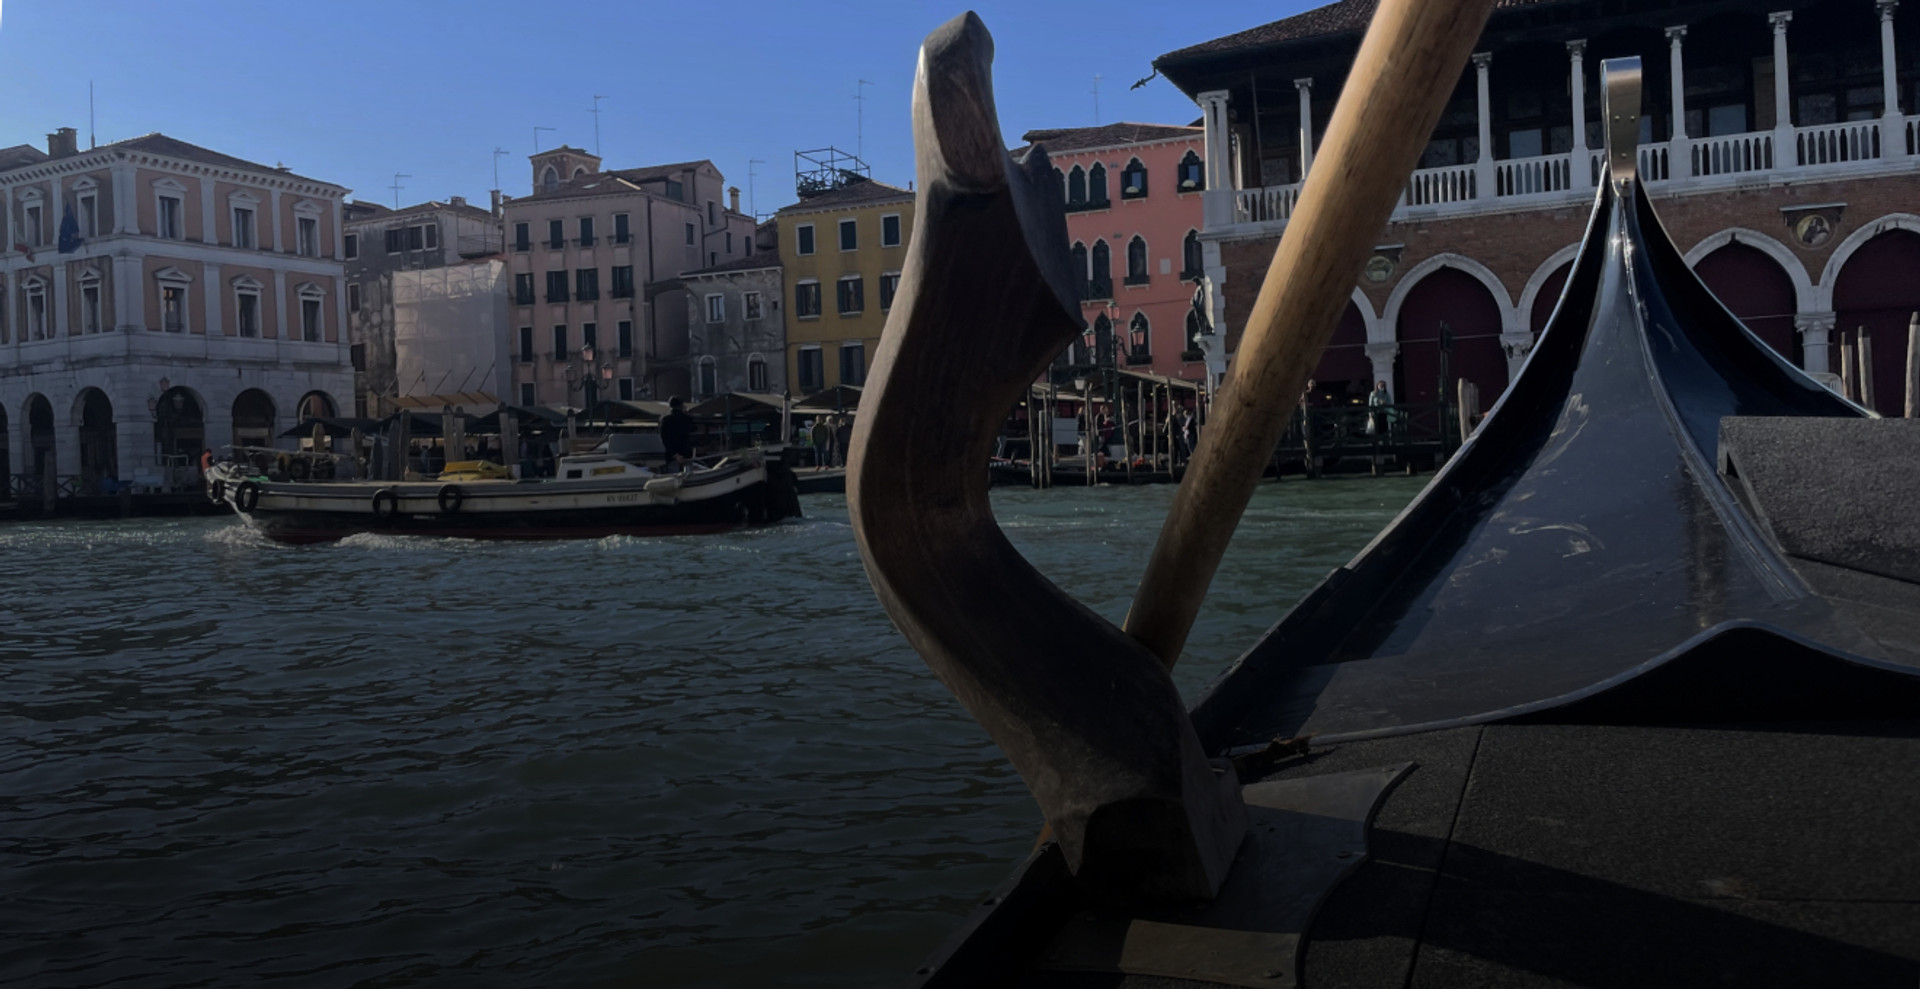 Мала за розміром, але важлива за змістом: що таке форкола та як вона зберігає ідентичність Венеції?